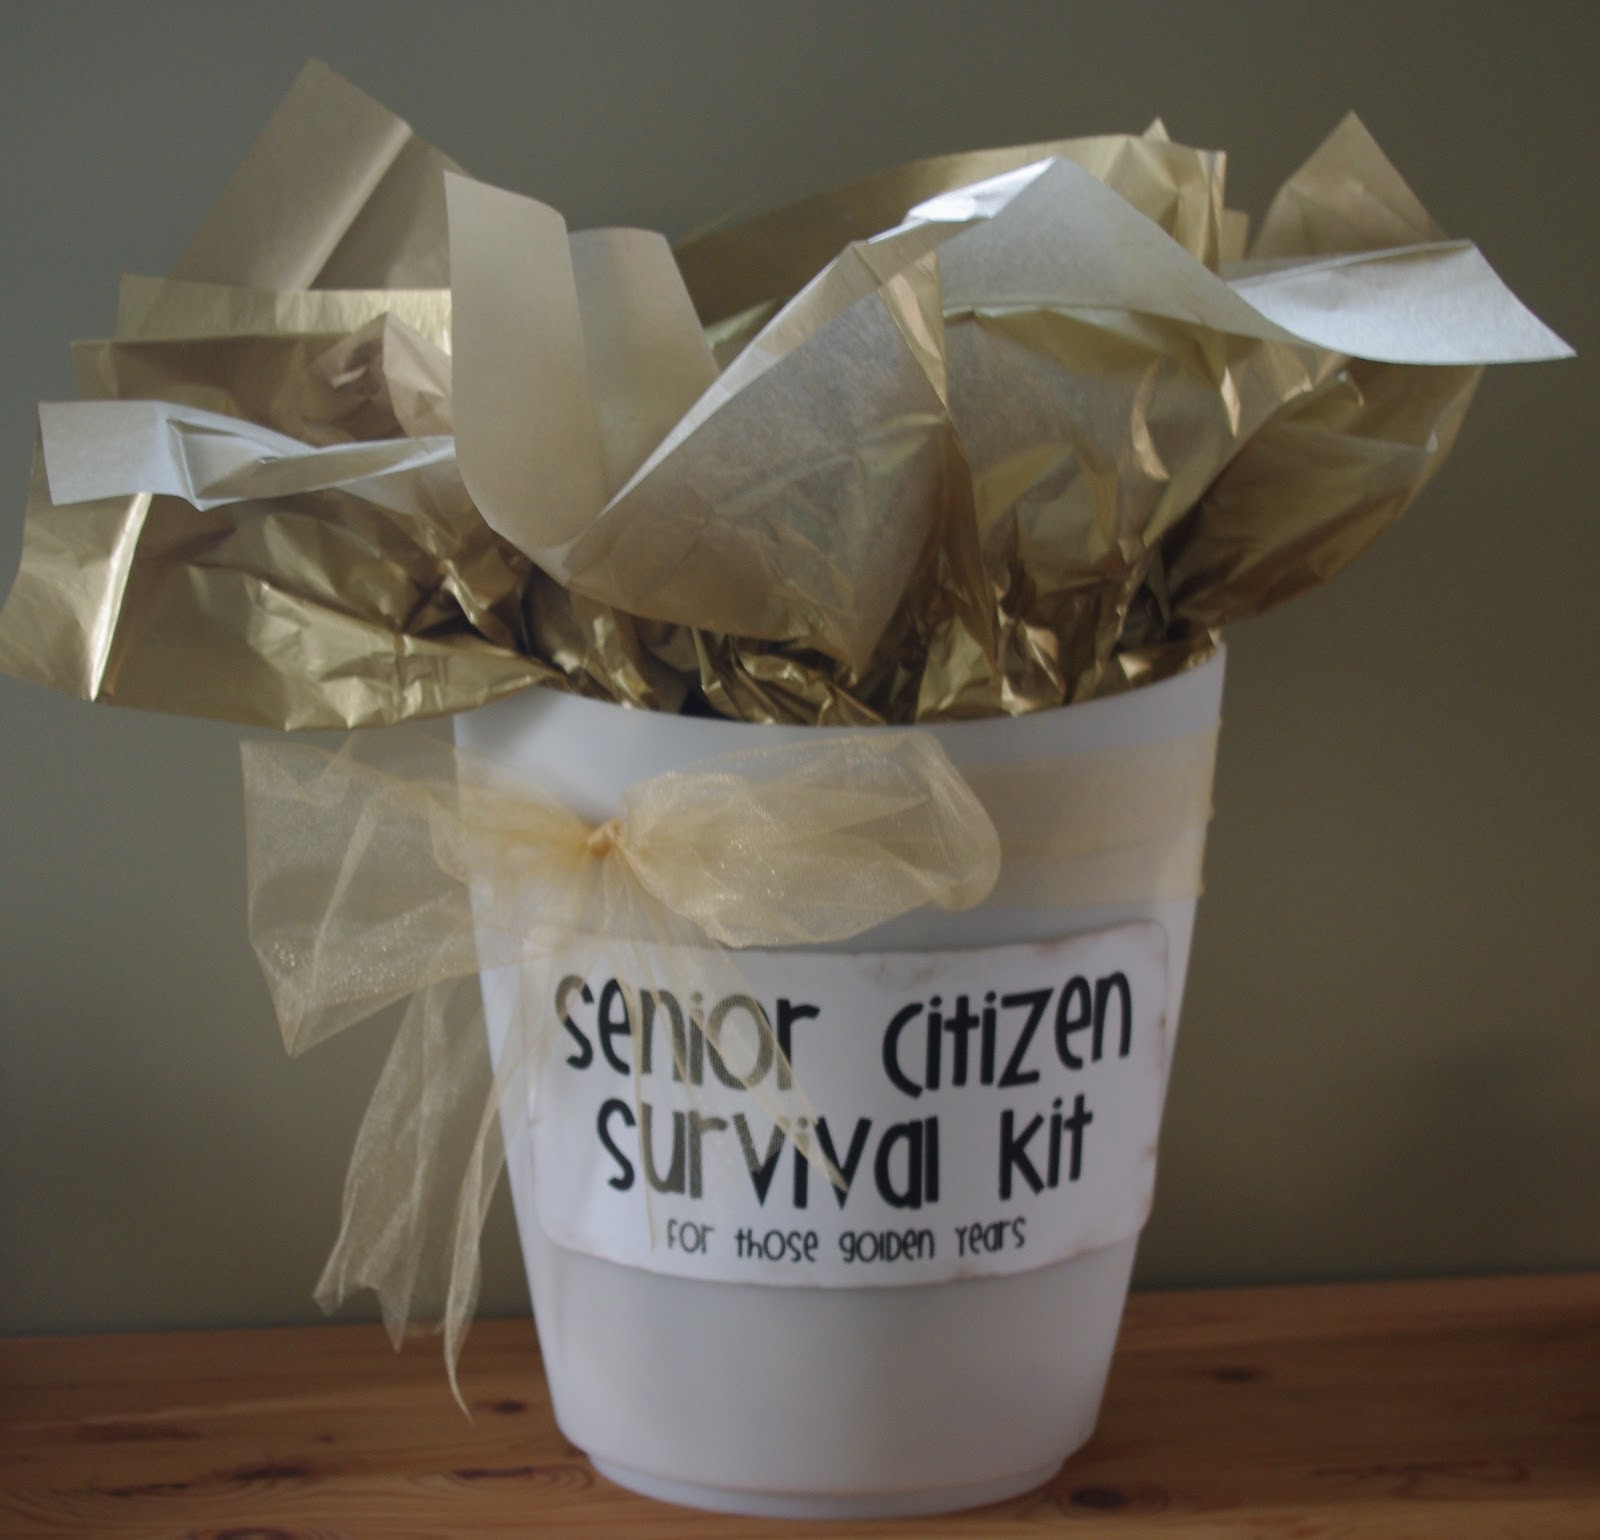 Gift Basket Ideas For Elderly
 Creative "Try"als Senior Citizen Survival Kit